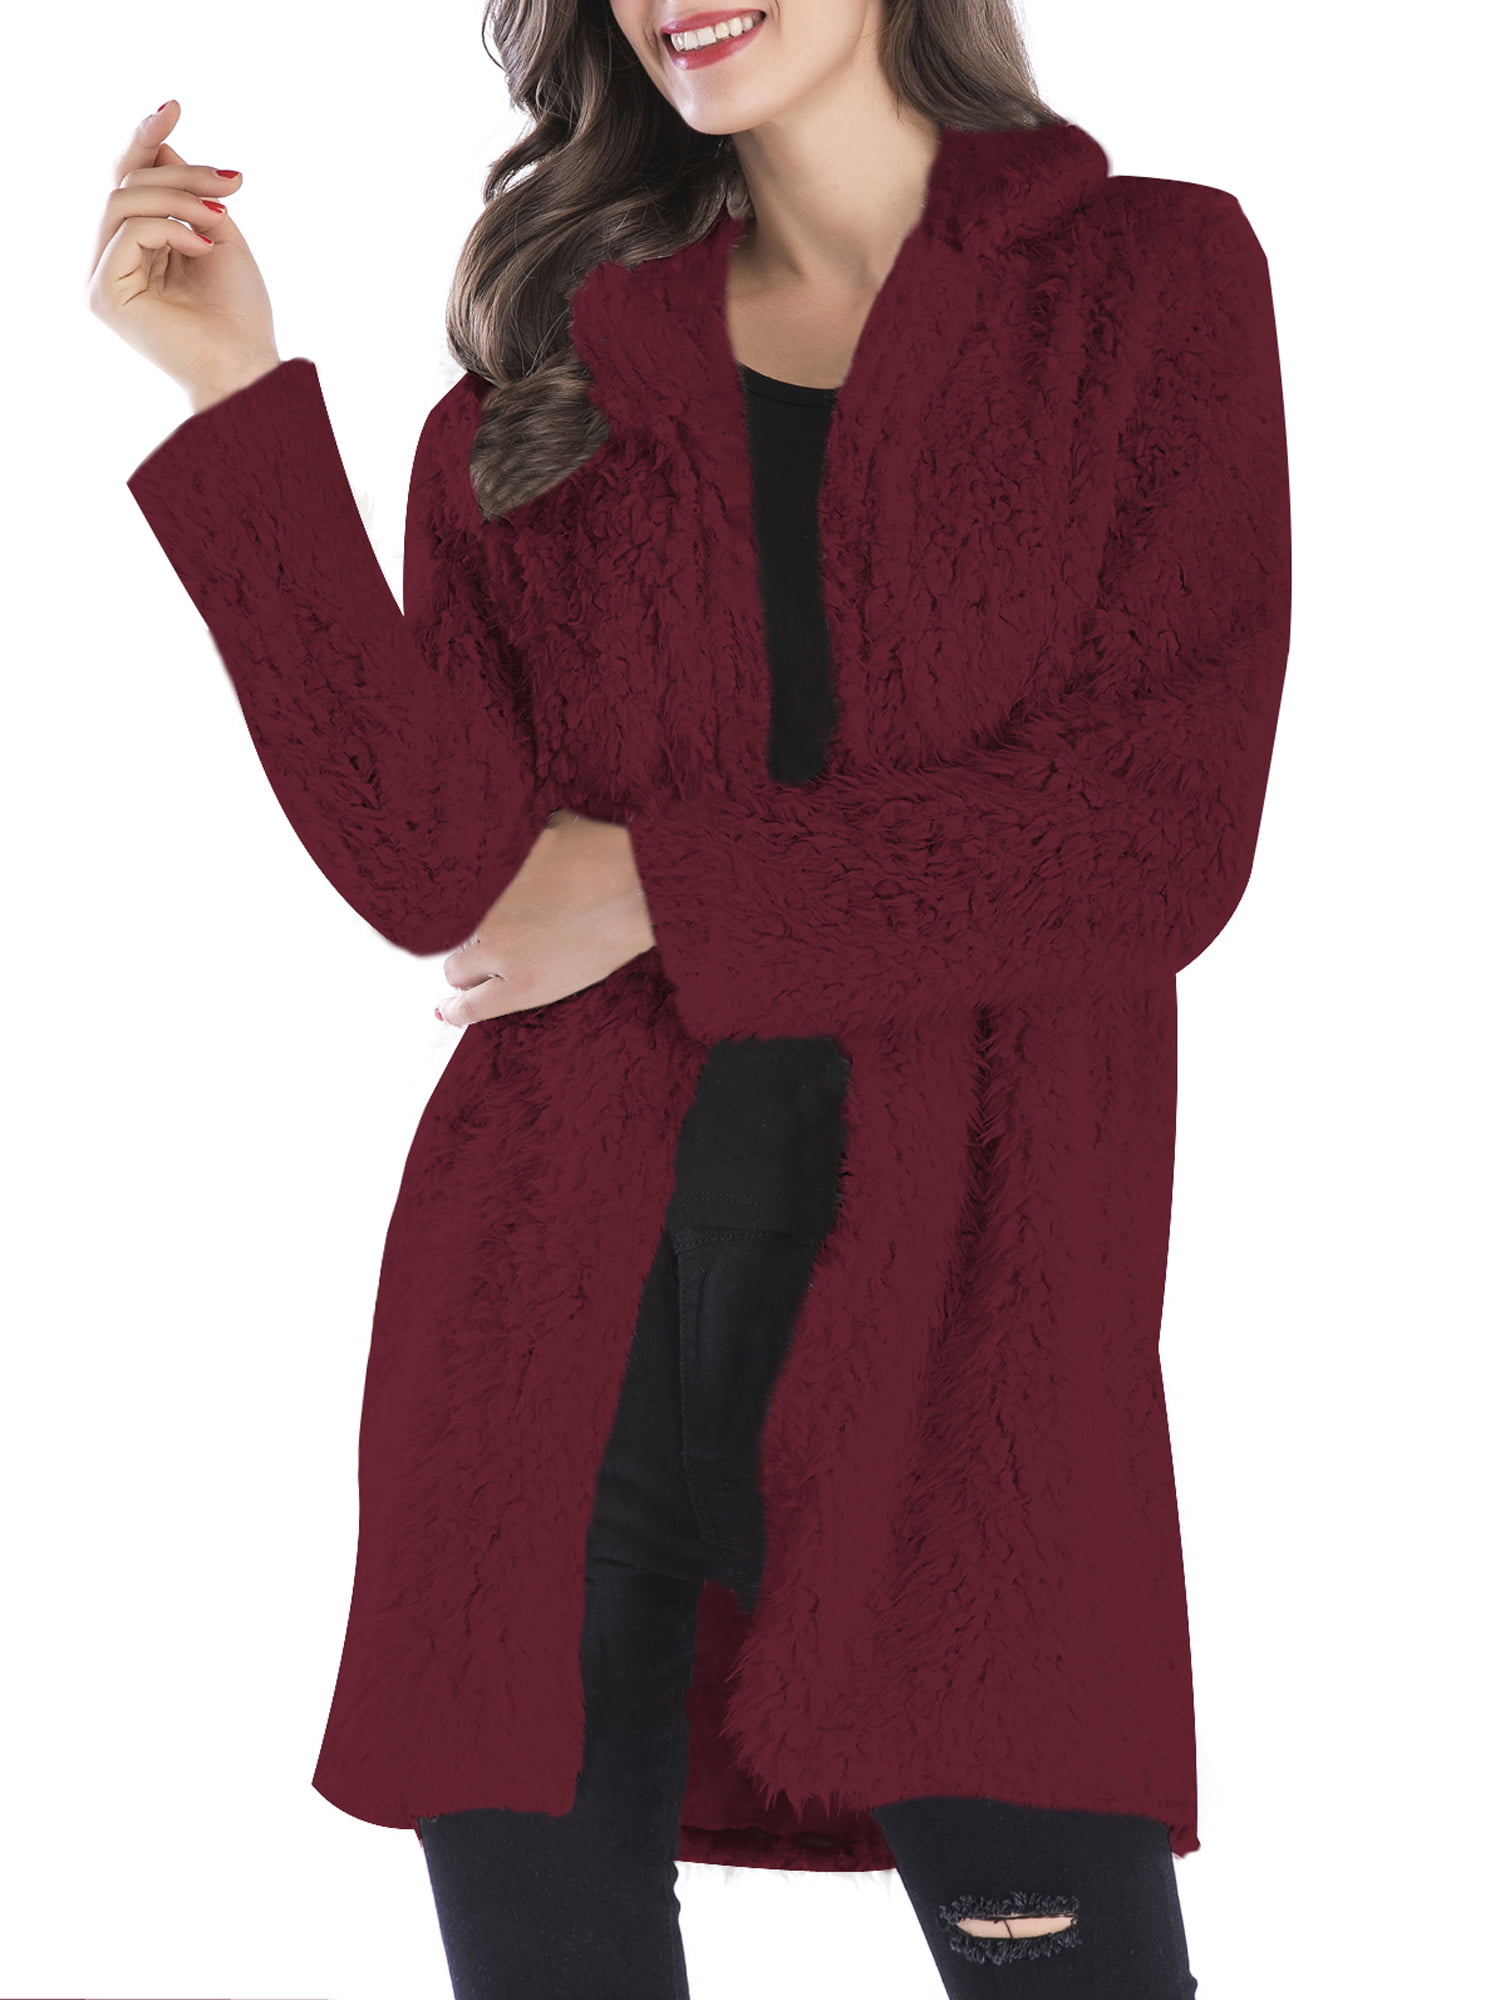 LELINTA Women's Fleece Lapel Open Front Long Cardigan Coat Faux Fur Warm Winter Outwear Jackets Pockets, Beige/ Black/ Wine Red -